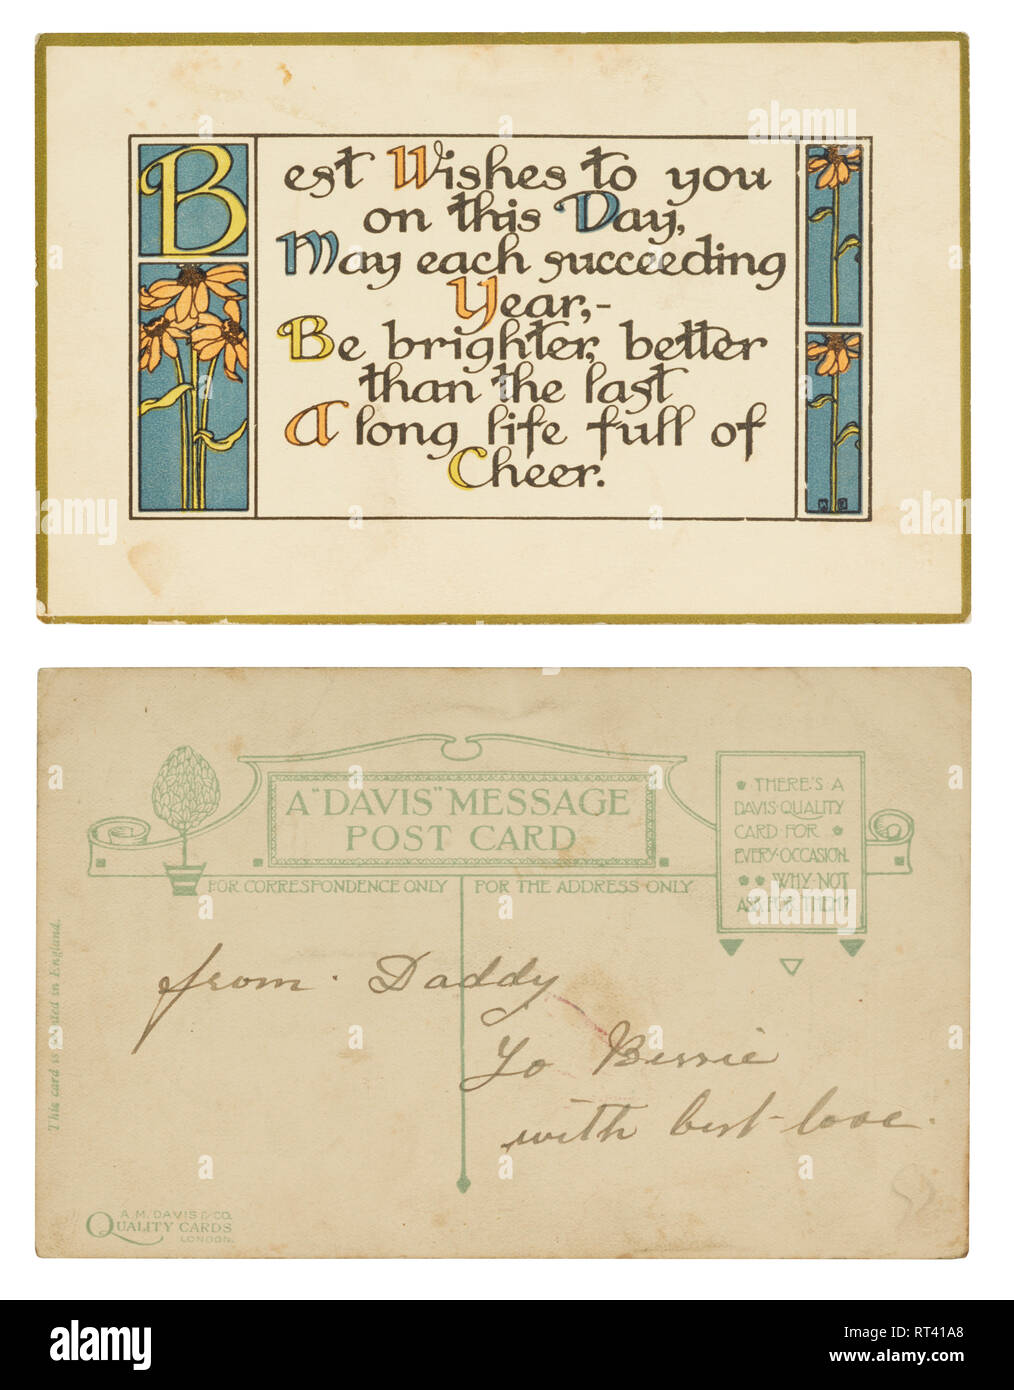 Una postal de felicitación a partir de cerca de 1915 de Daddy a Bessie con amor Foto de stock